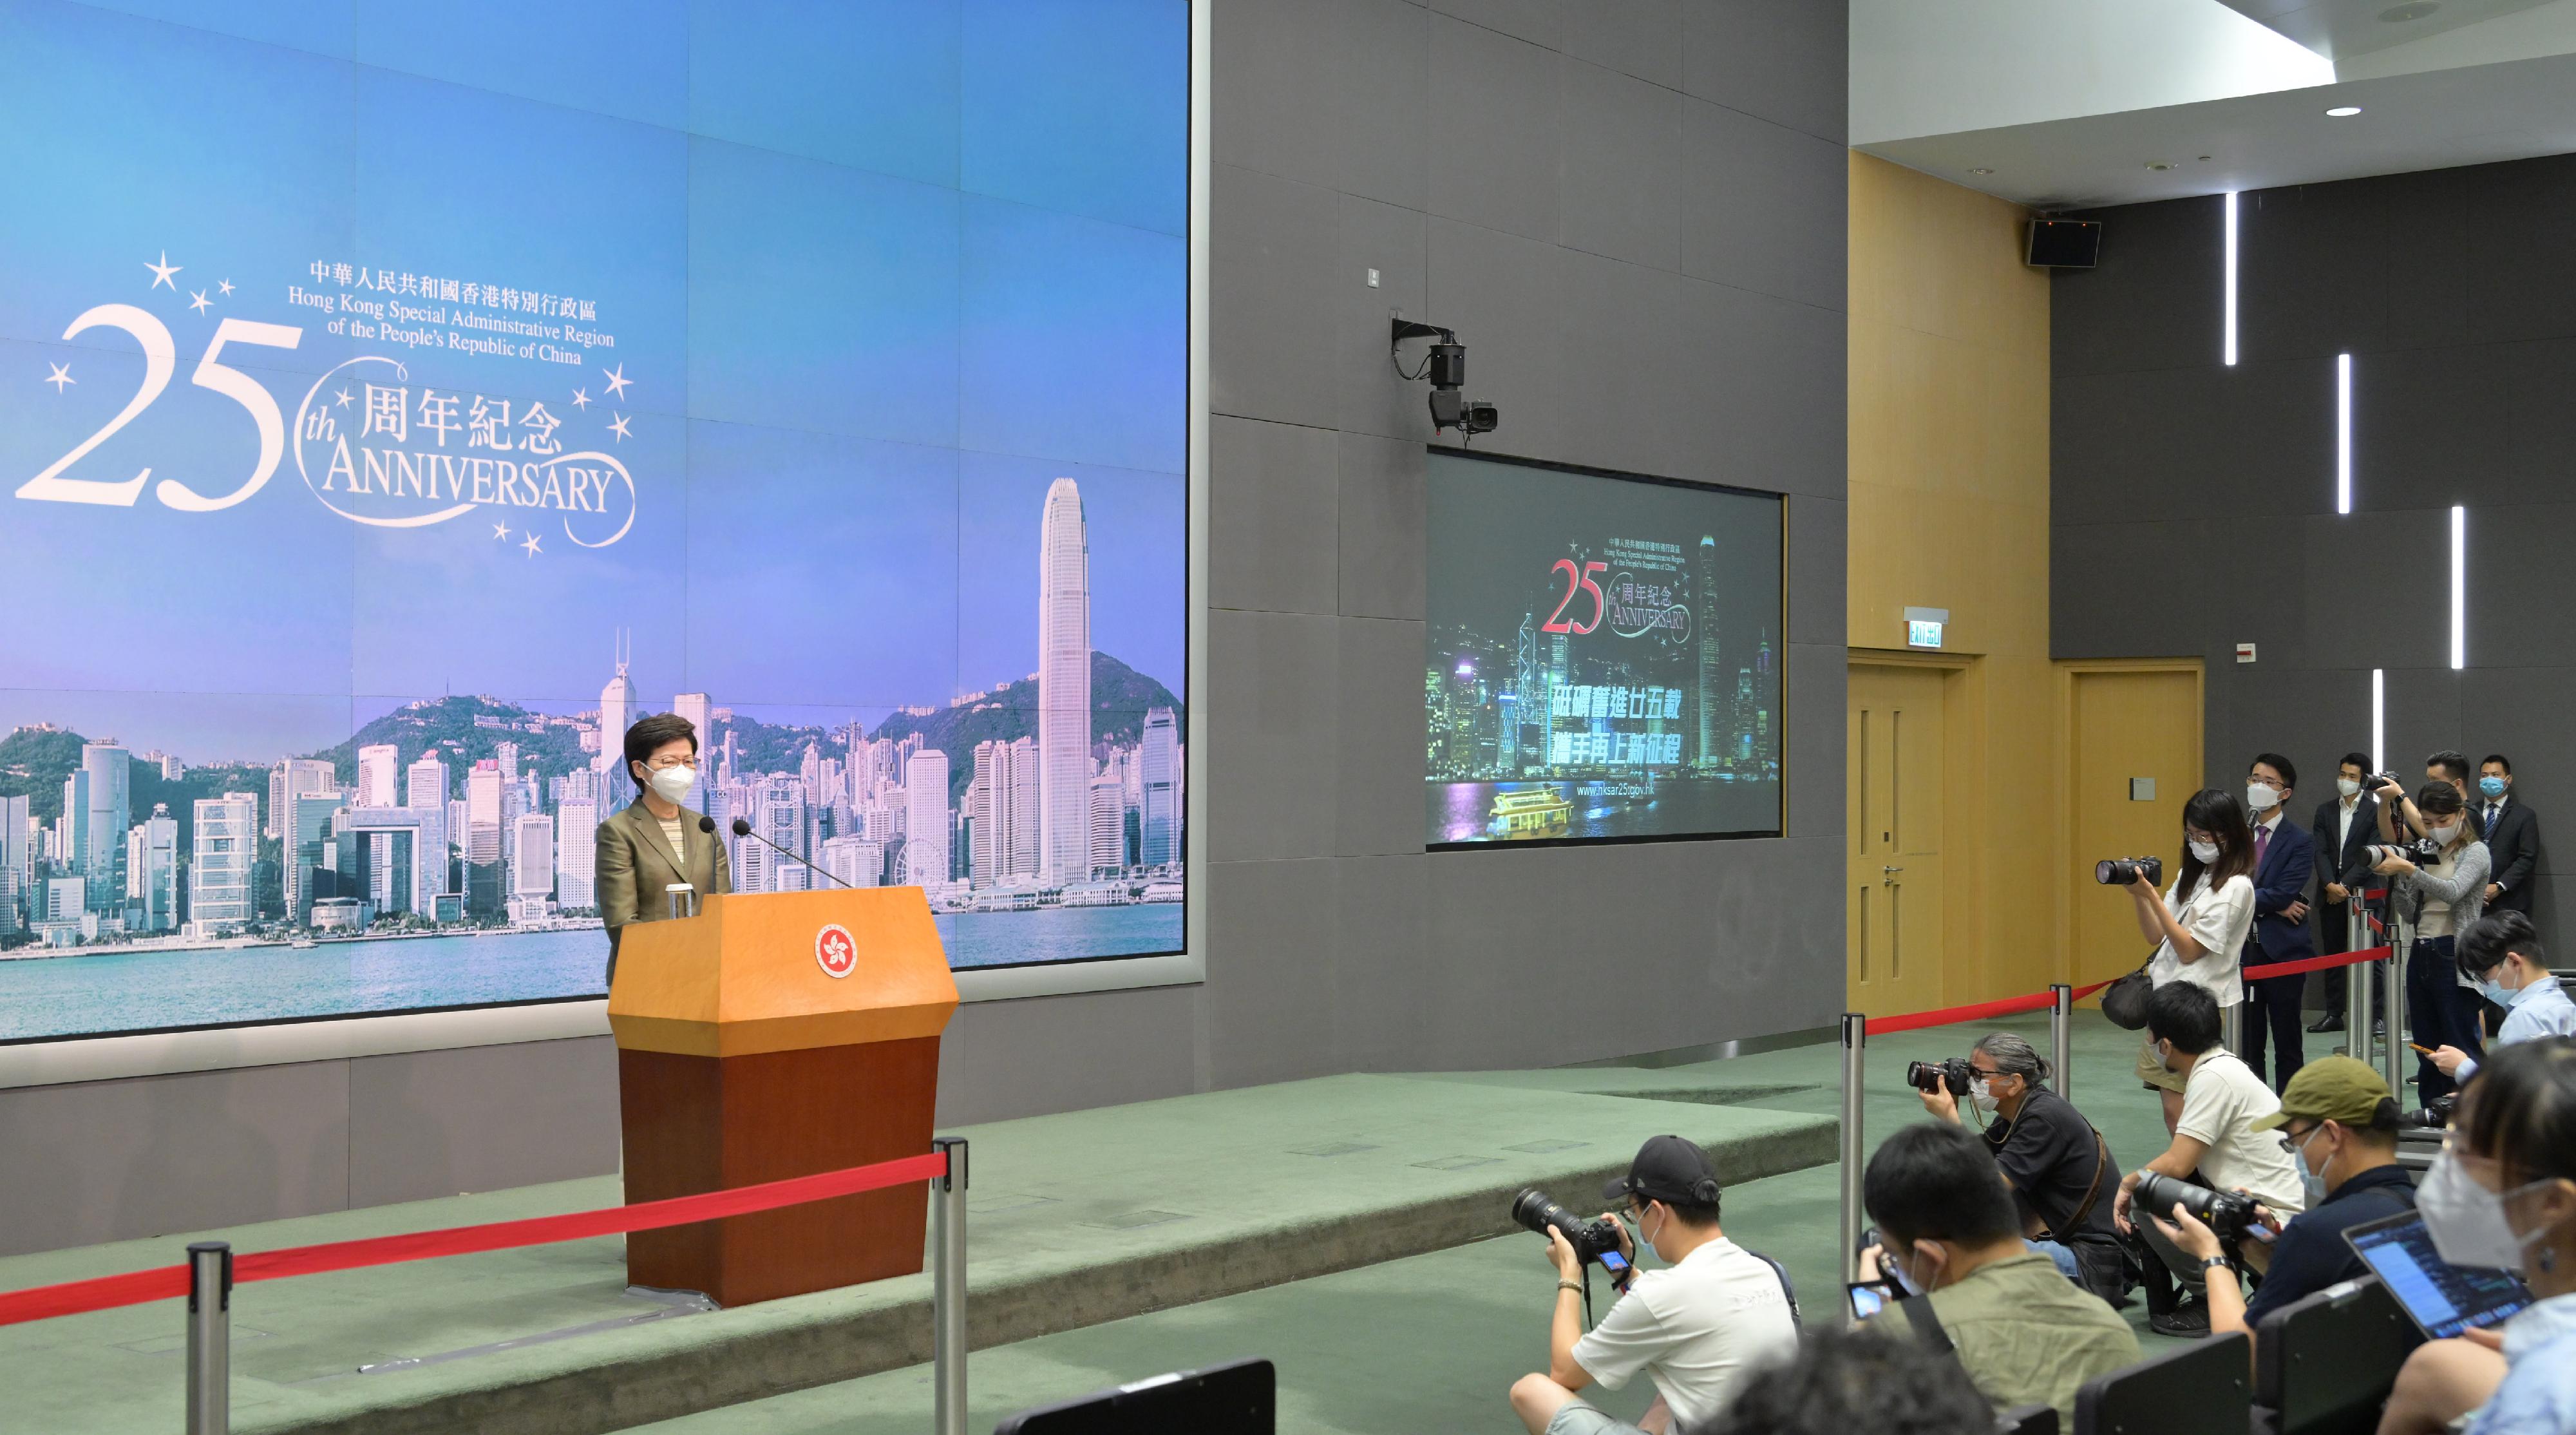 行政長官林鄭月娥今日（五月三十一日）出席行政會議前會見傳媒，簡介香港特別行政區成立二十五周年的主題曲《前》，並表示一系列慶祝活動會順利開展。